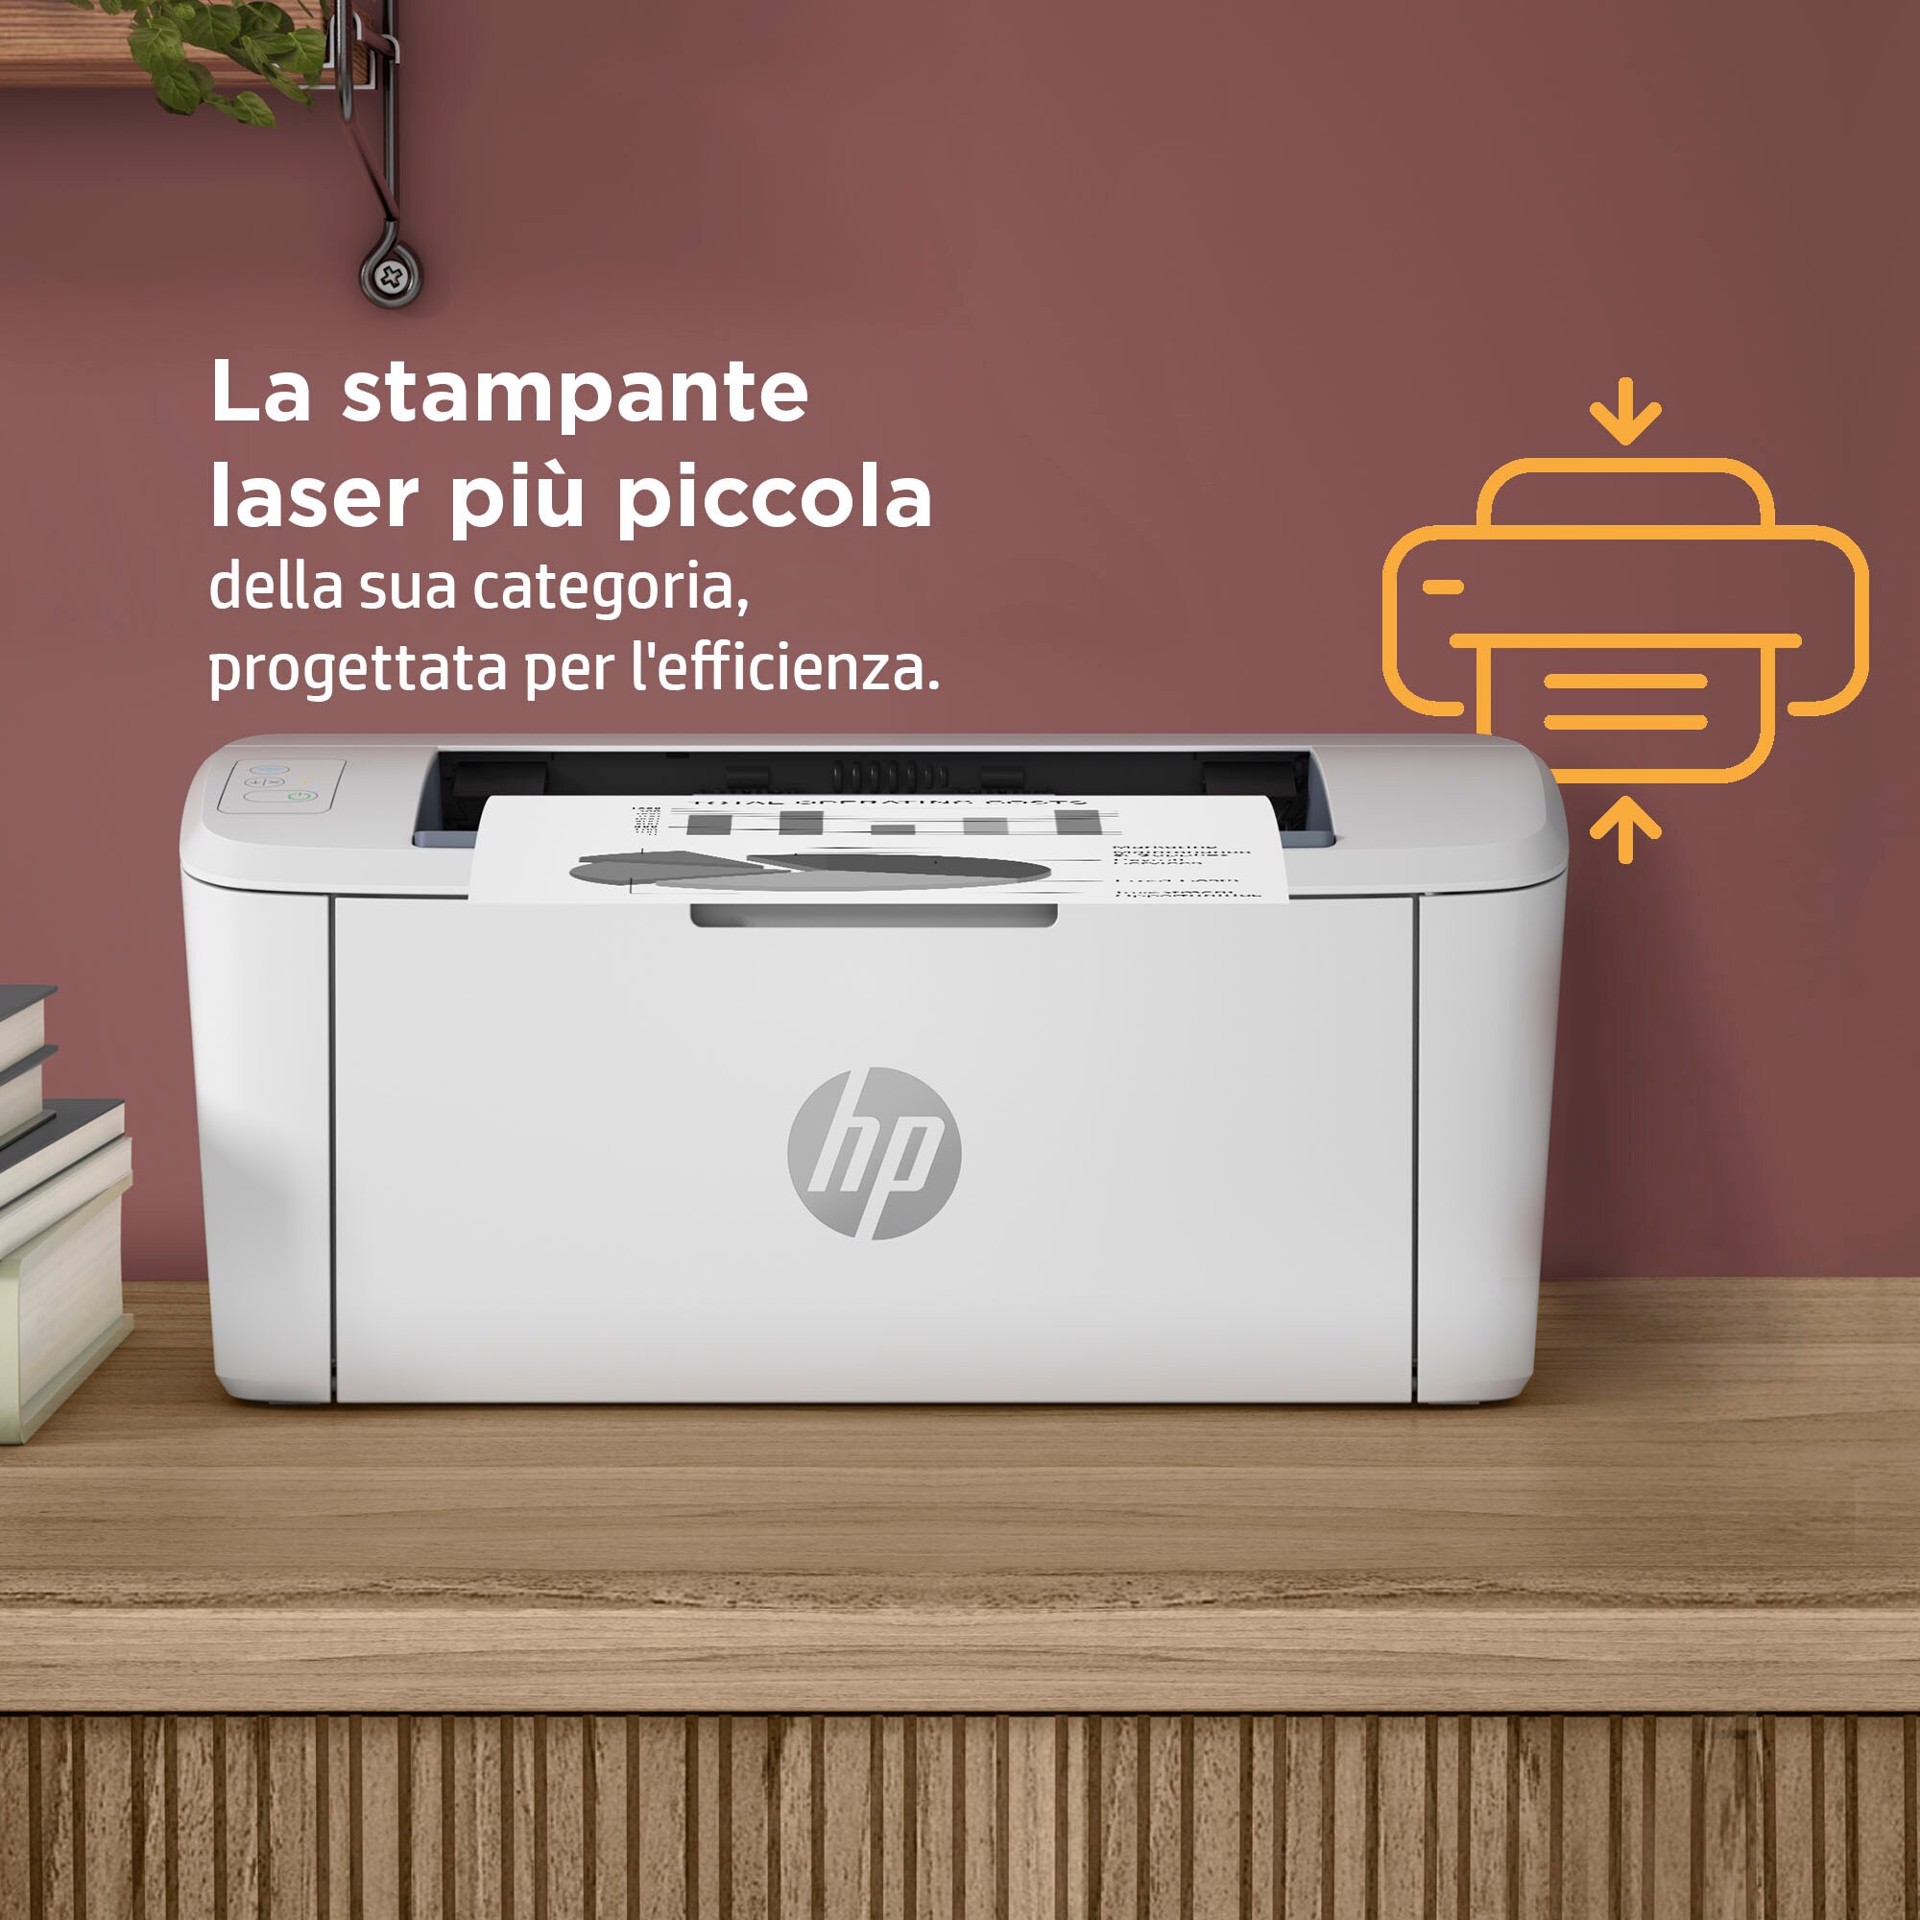 HP LaserJet Stampante M110w, Bianco e nero, Stampante per Piccoli